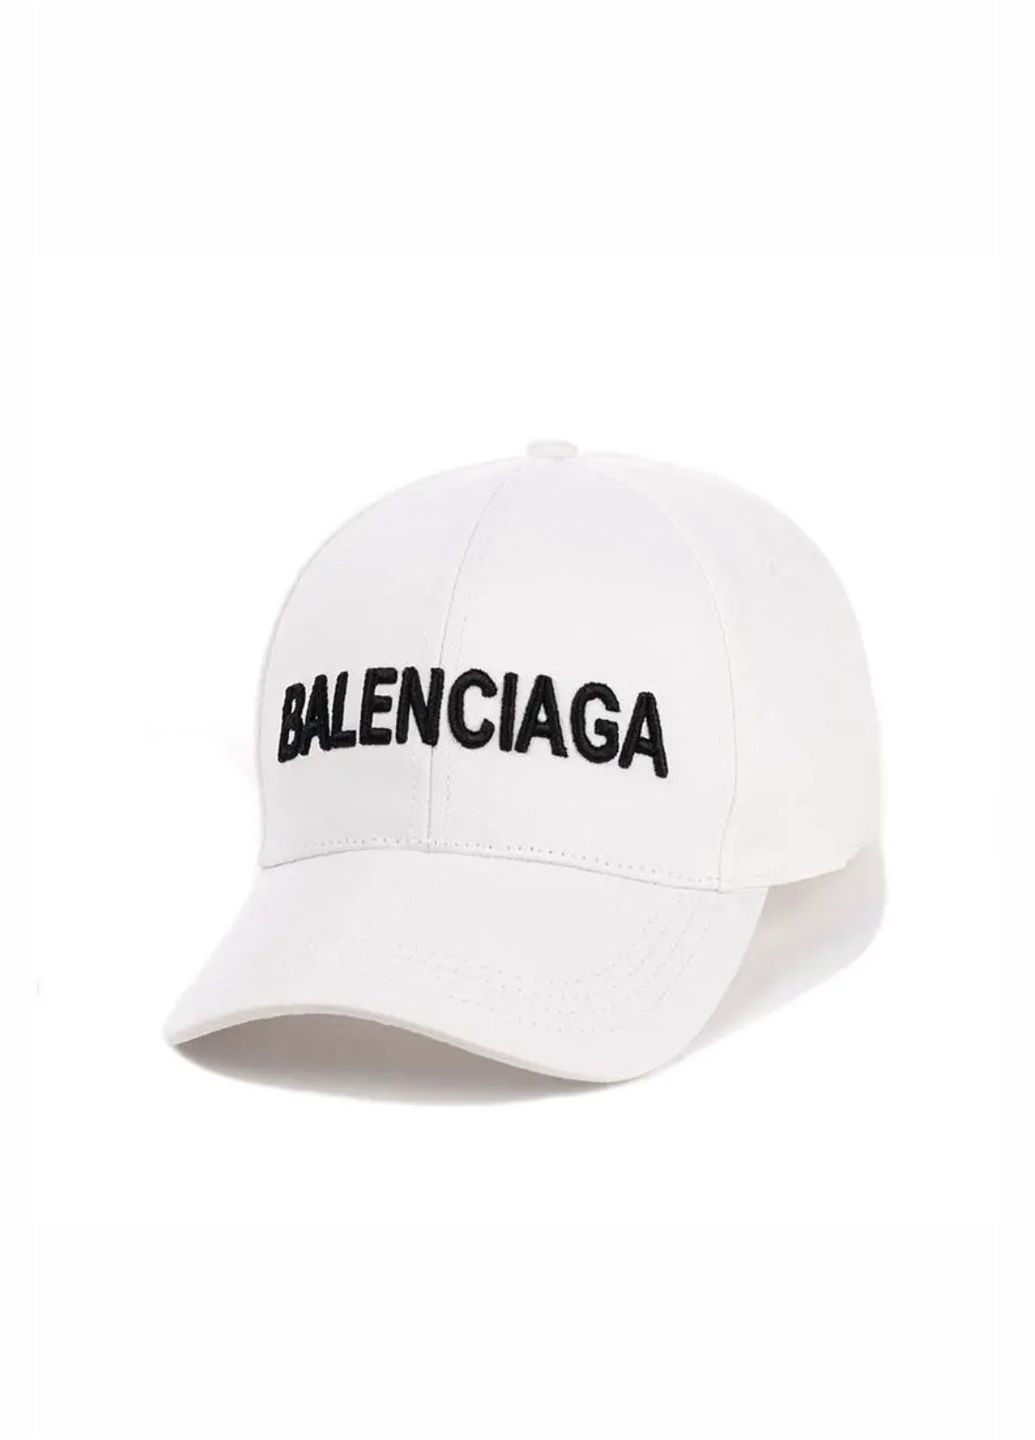 Кепка молодежная Balenciaga / Баленсиага M/L No Brand кепка унісекс (280929008)